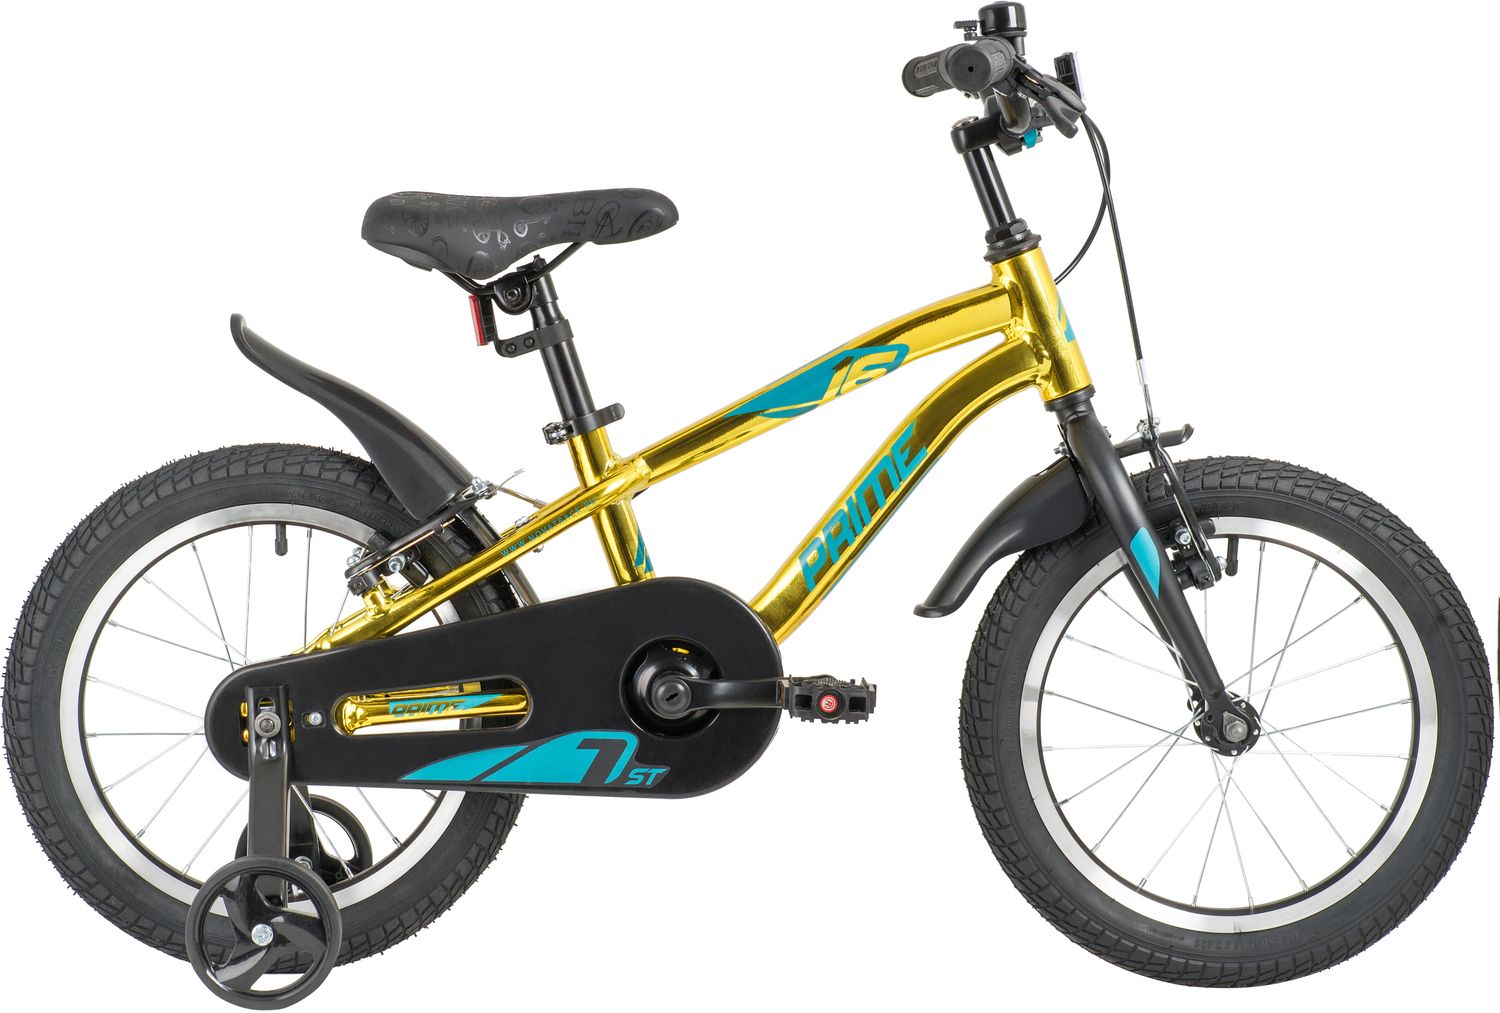  Отзывы о Детском велосипеде Novatrack Prime 16 Alloy V-Brake 2020